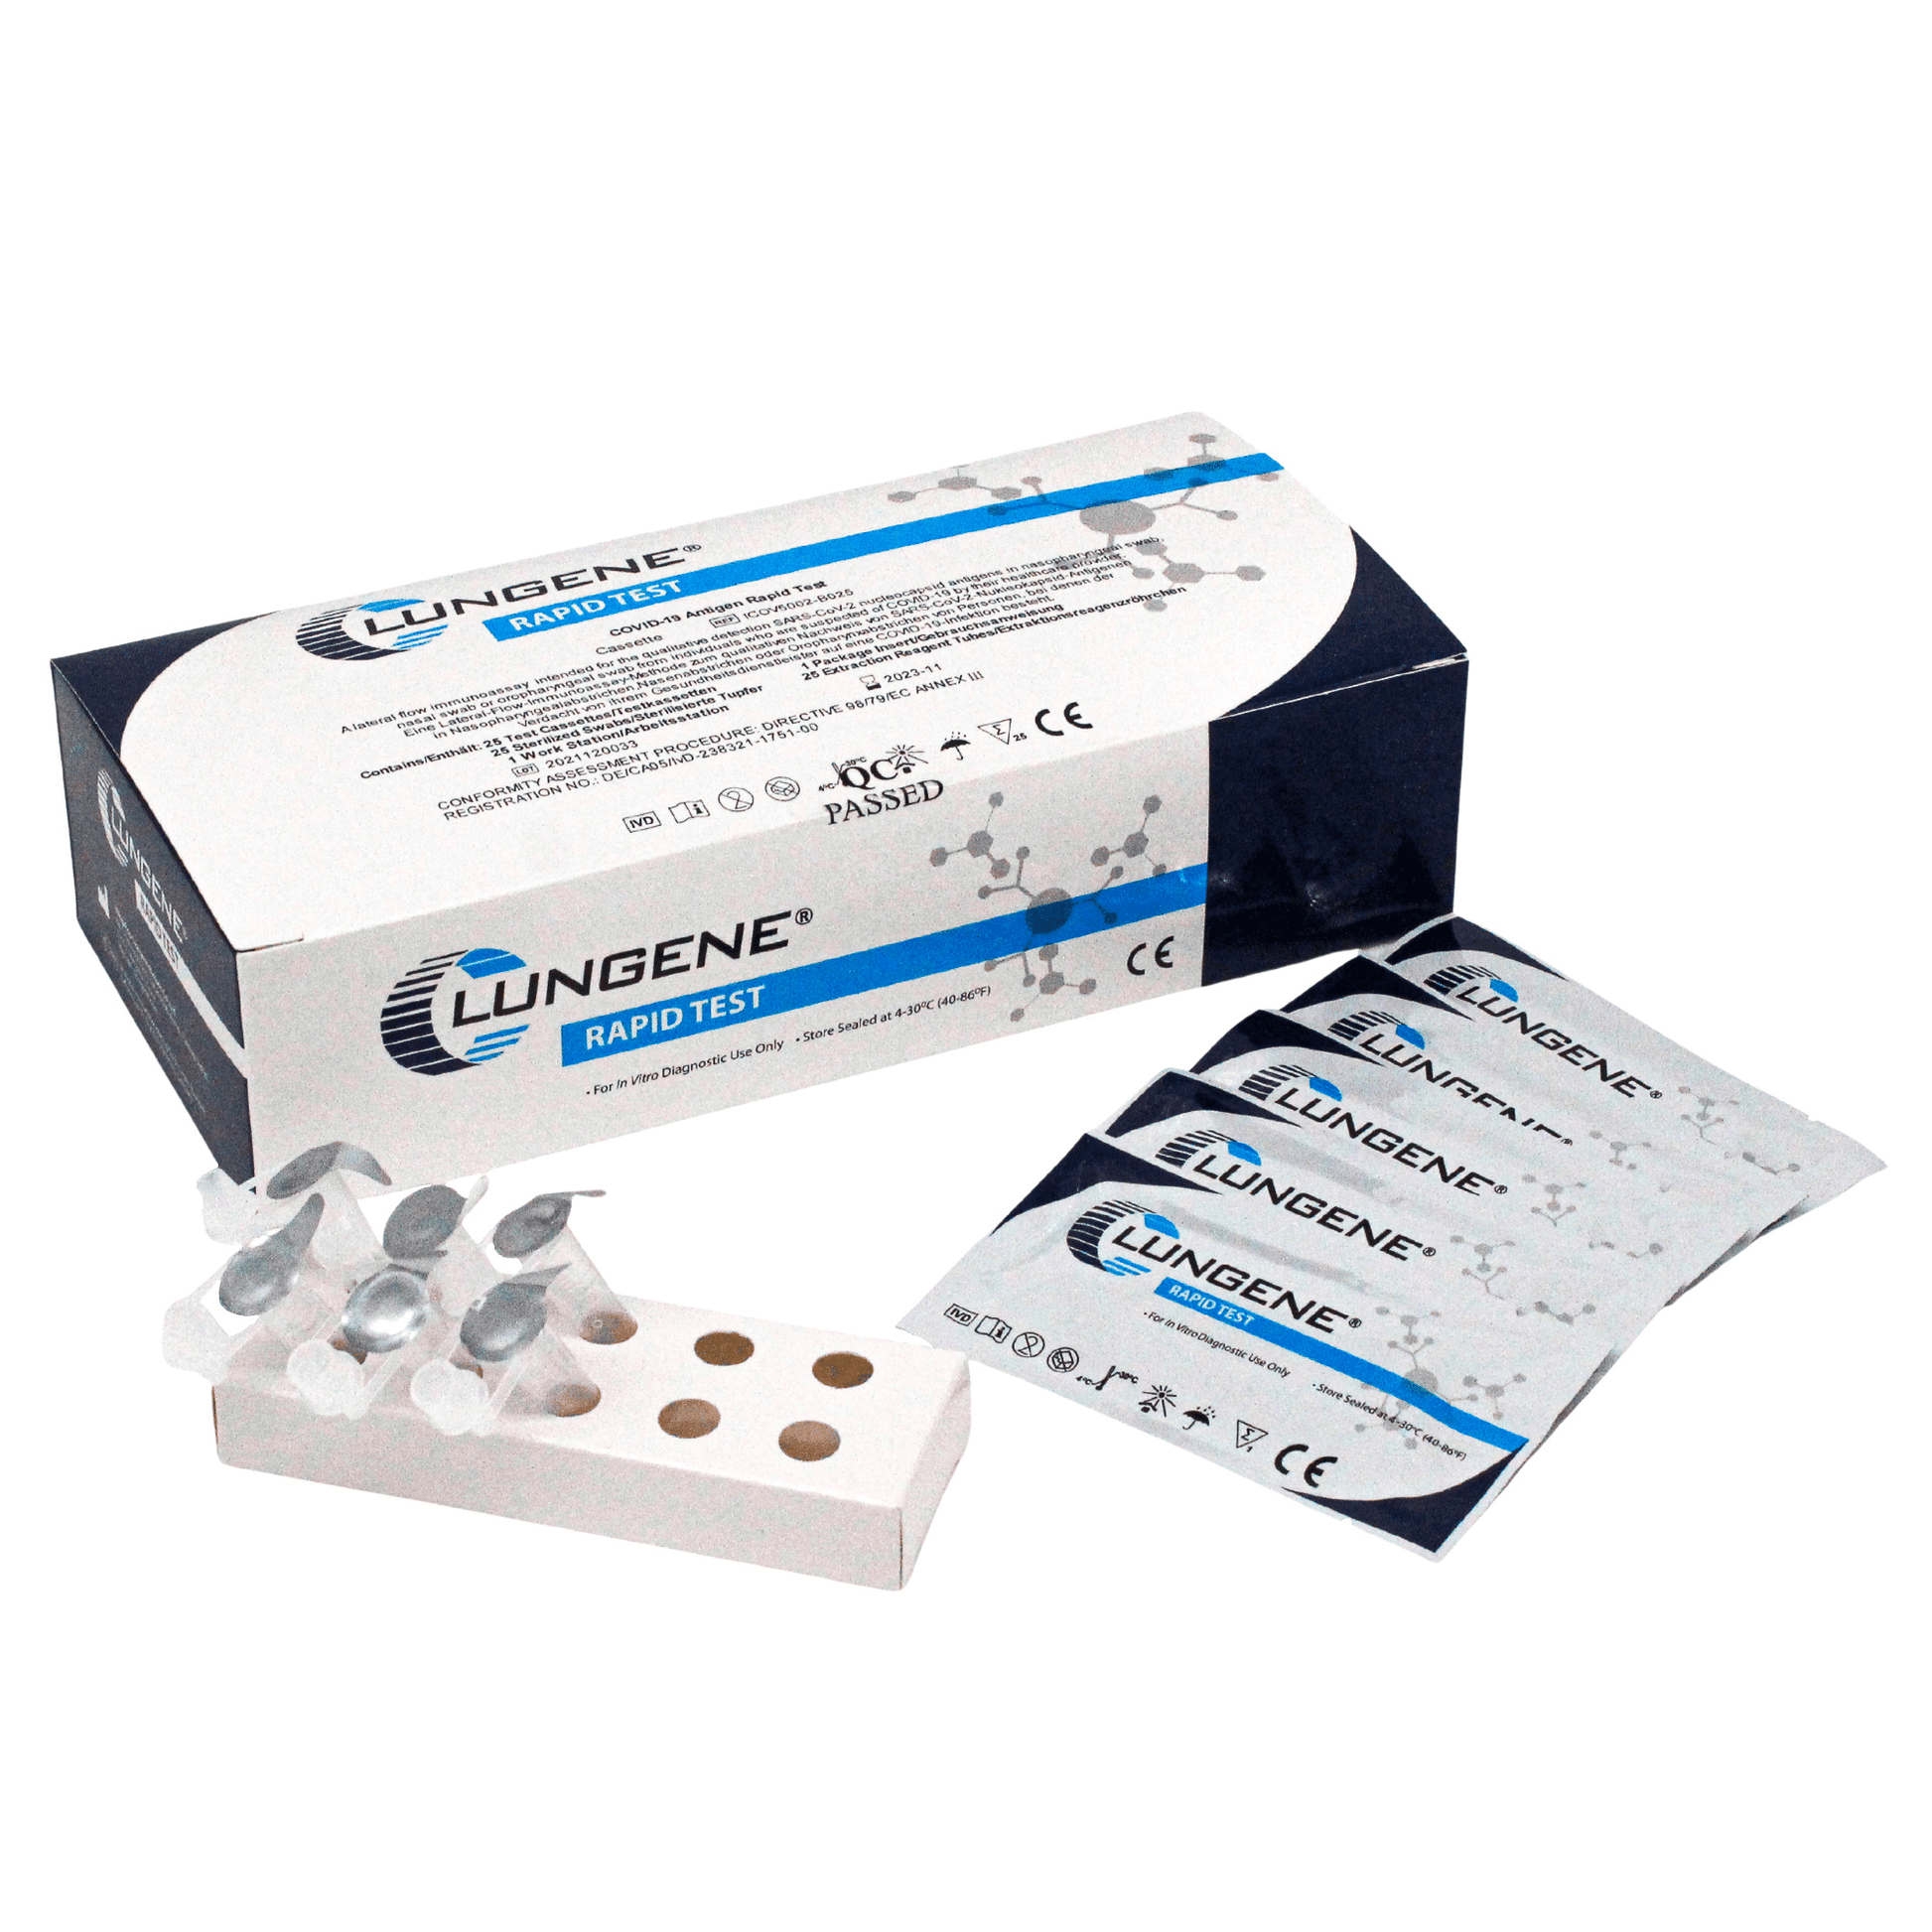 Clunge antigen rapid test 25 pieces AT079/20 - MHD 09/24